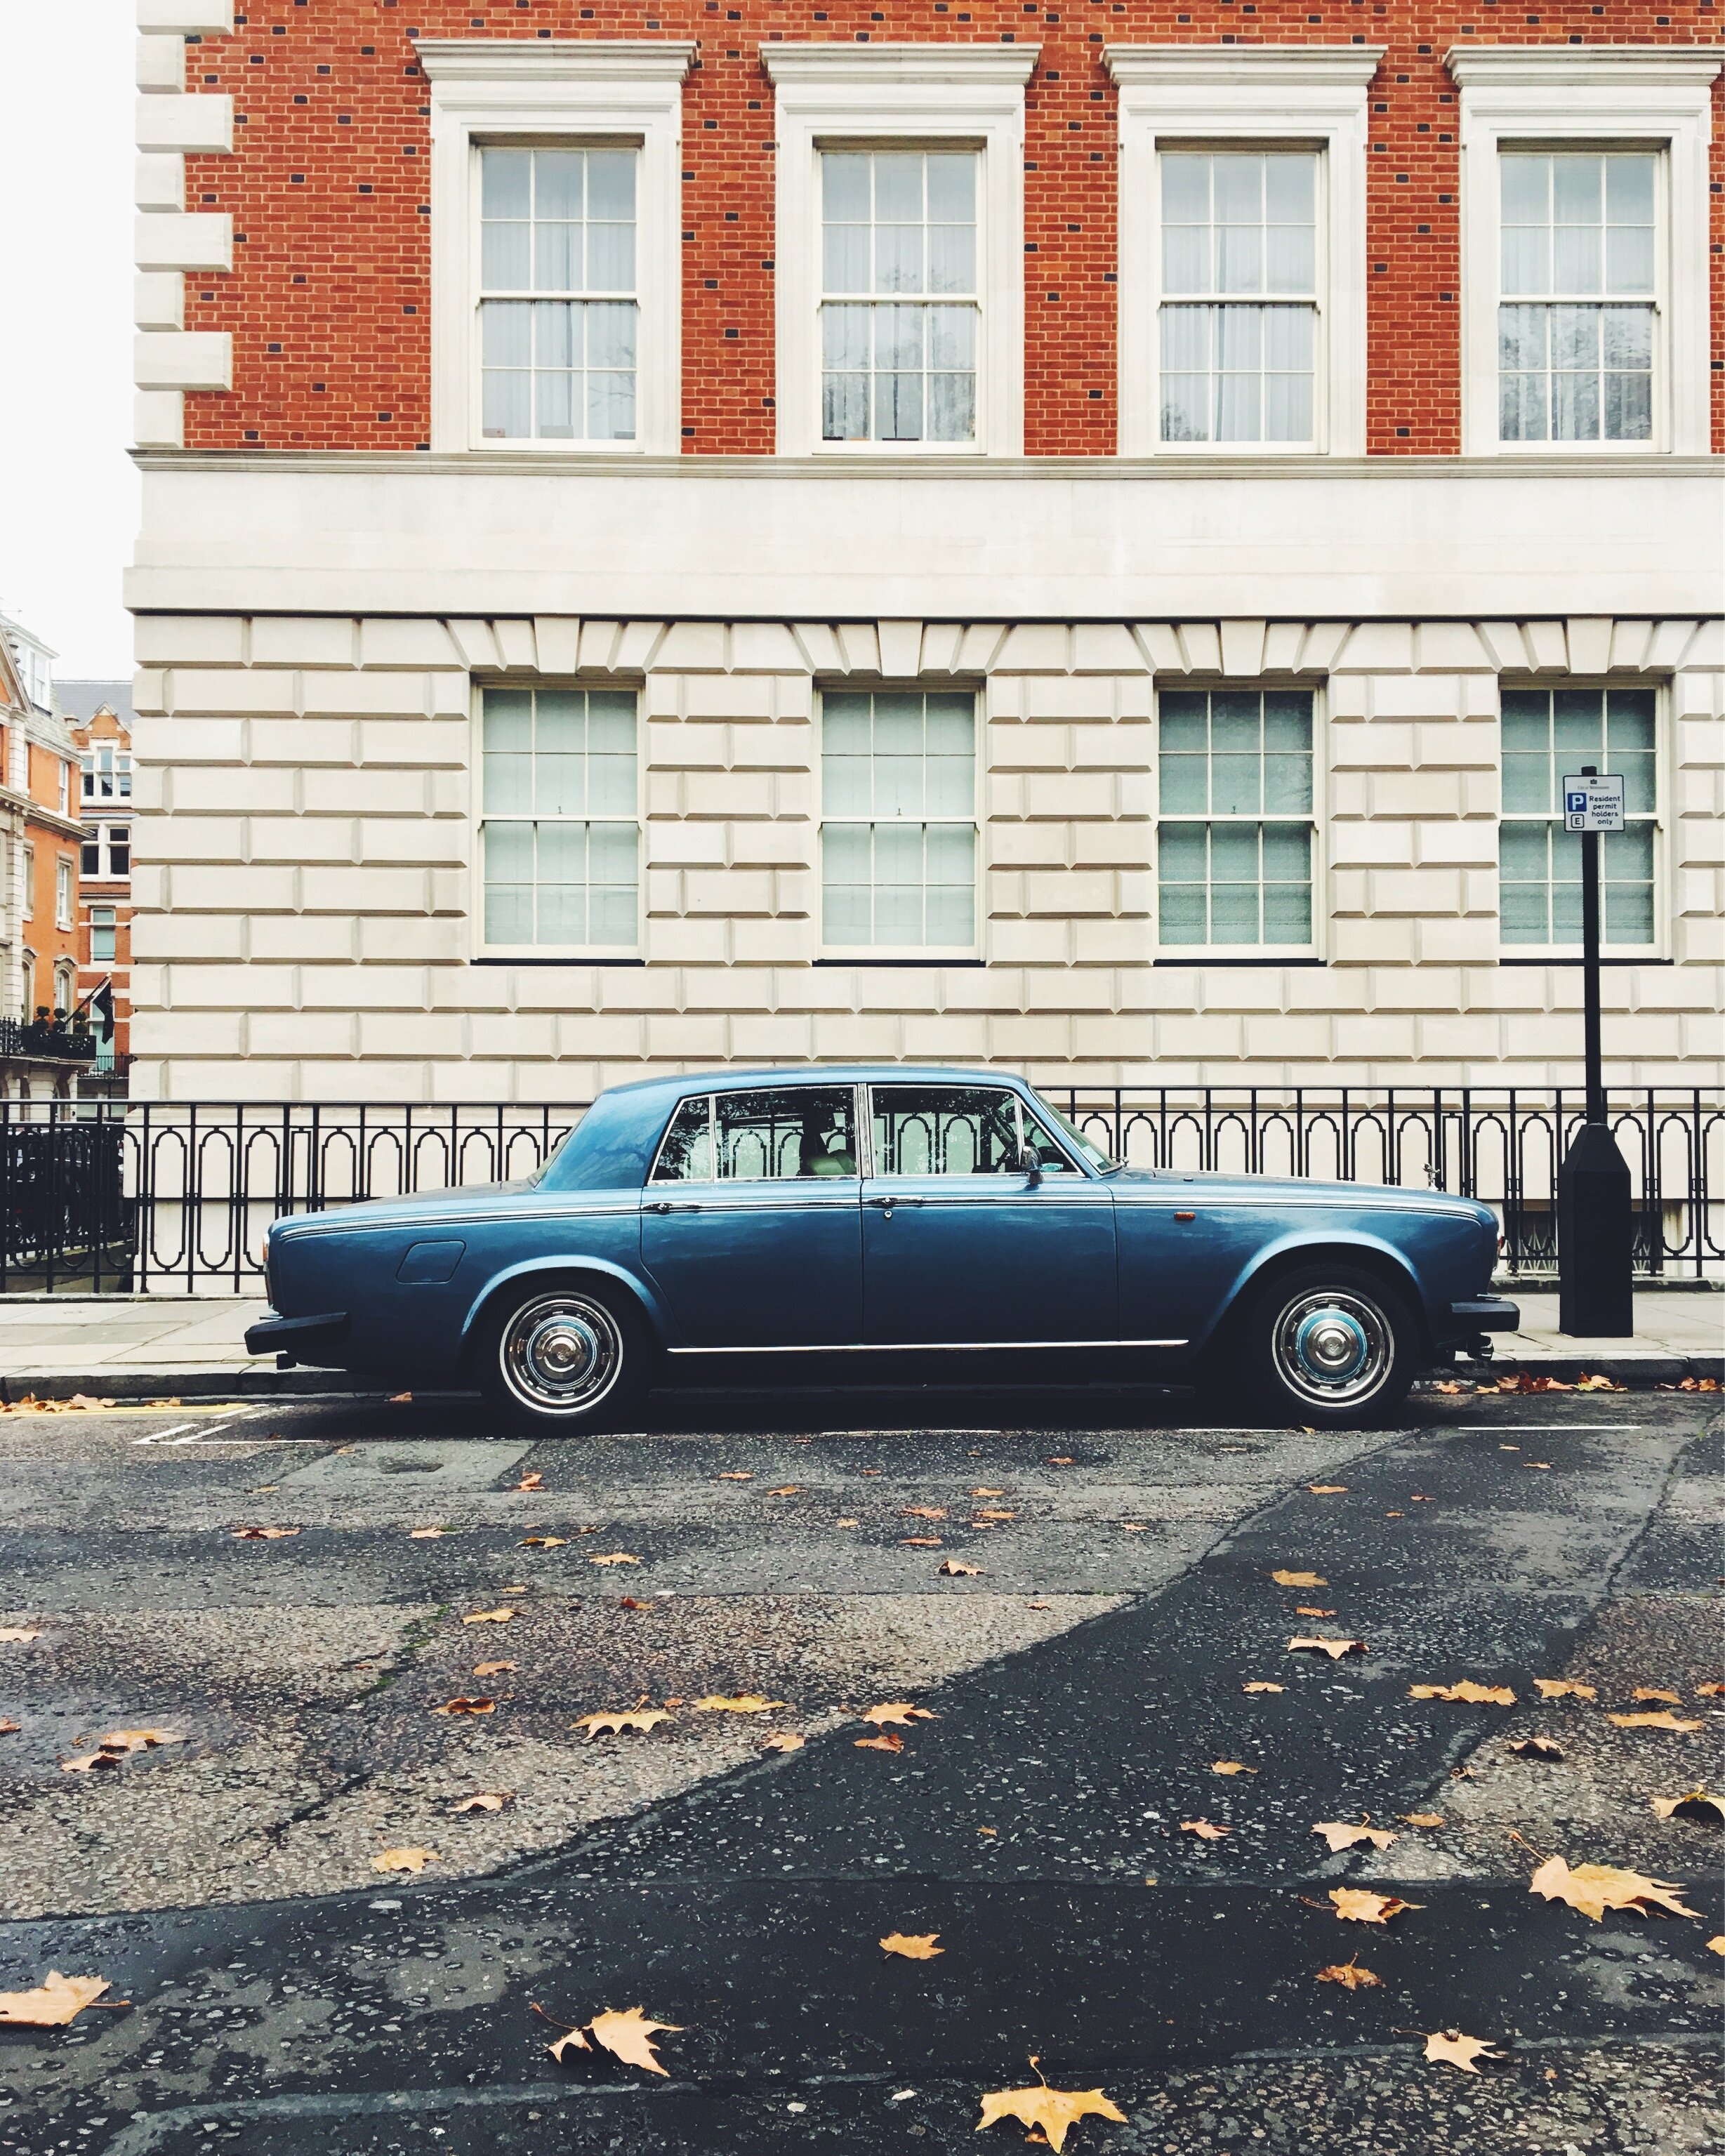 Rolls Royce Silver Shadow II, London